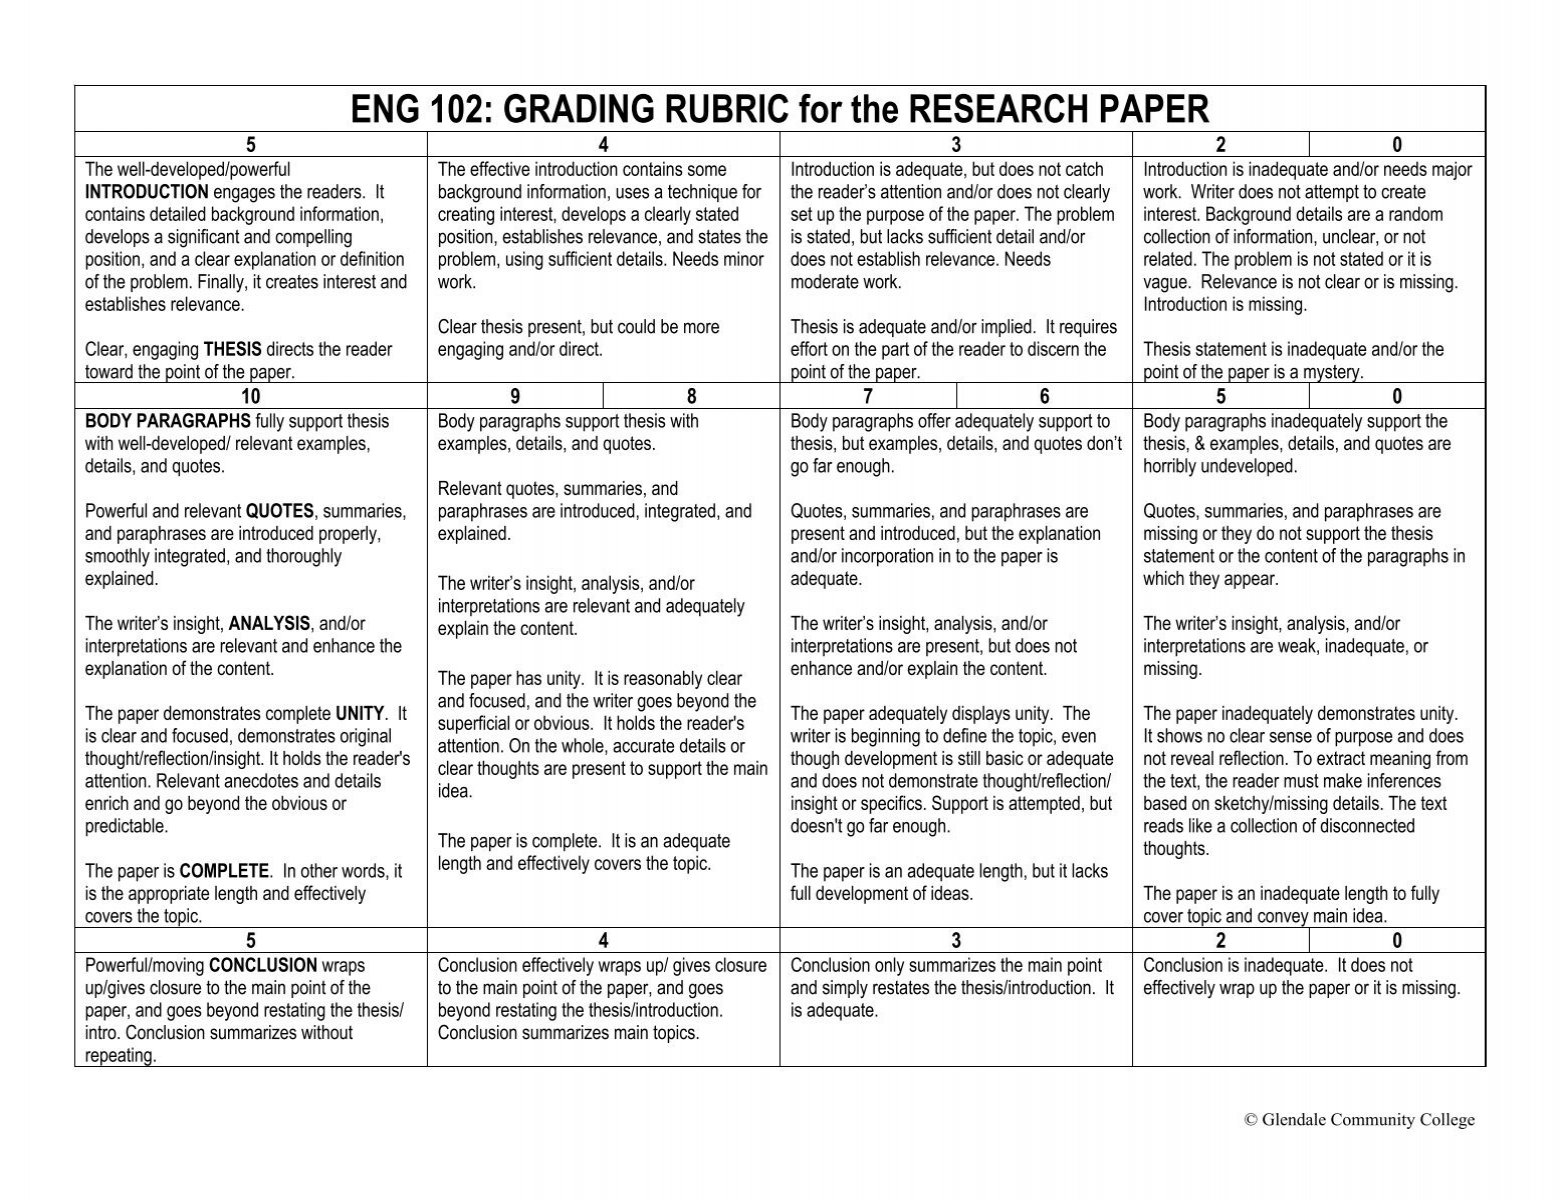 research paper grading criteria